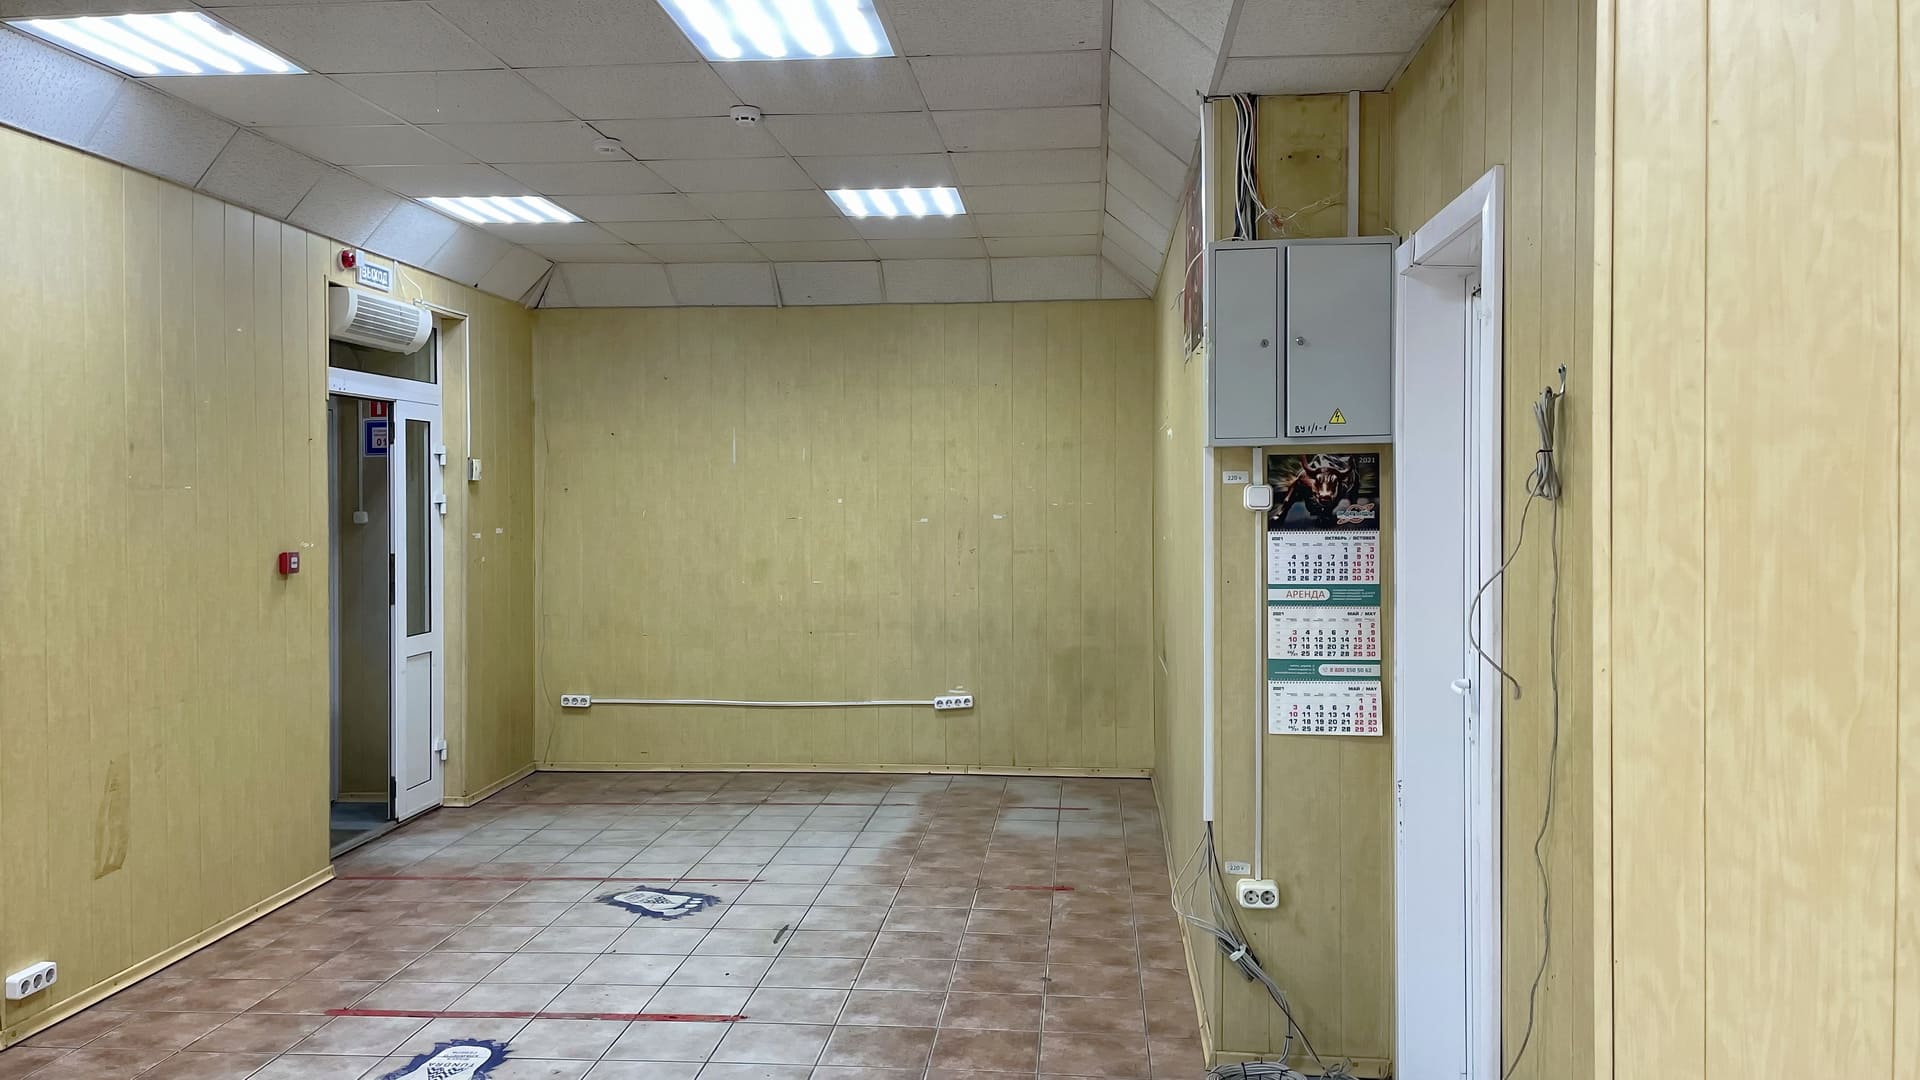 Аренда помещения под магазин в Ангарске для торговли алкогольными и разливными напитками площадью 68 кв. м. в формате минимаркета, с высокой проходимостью.